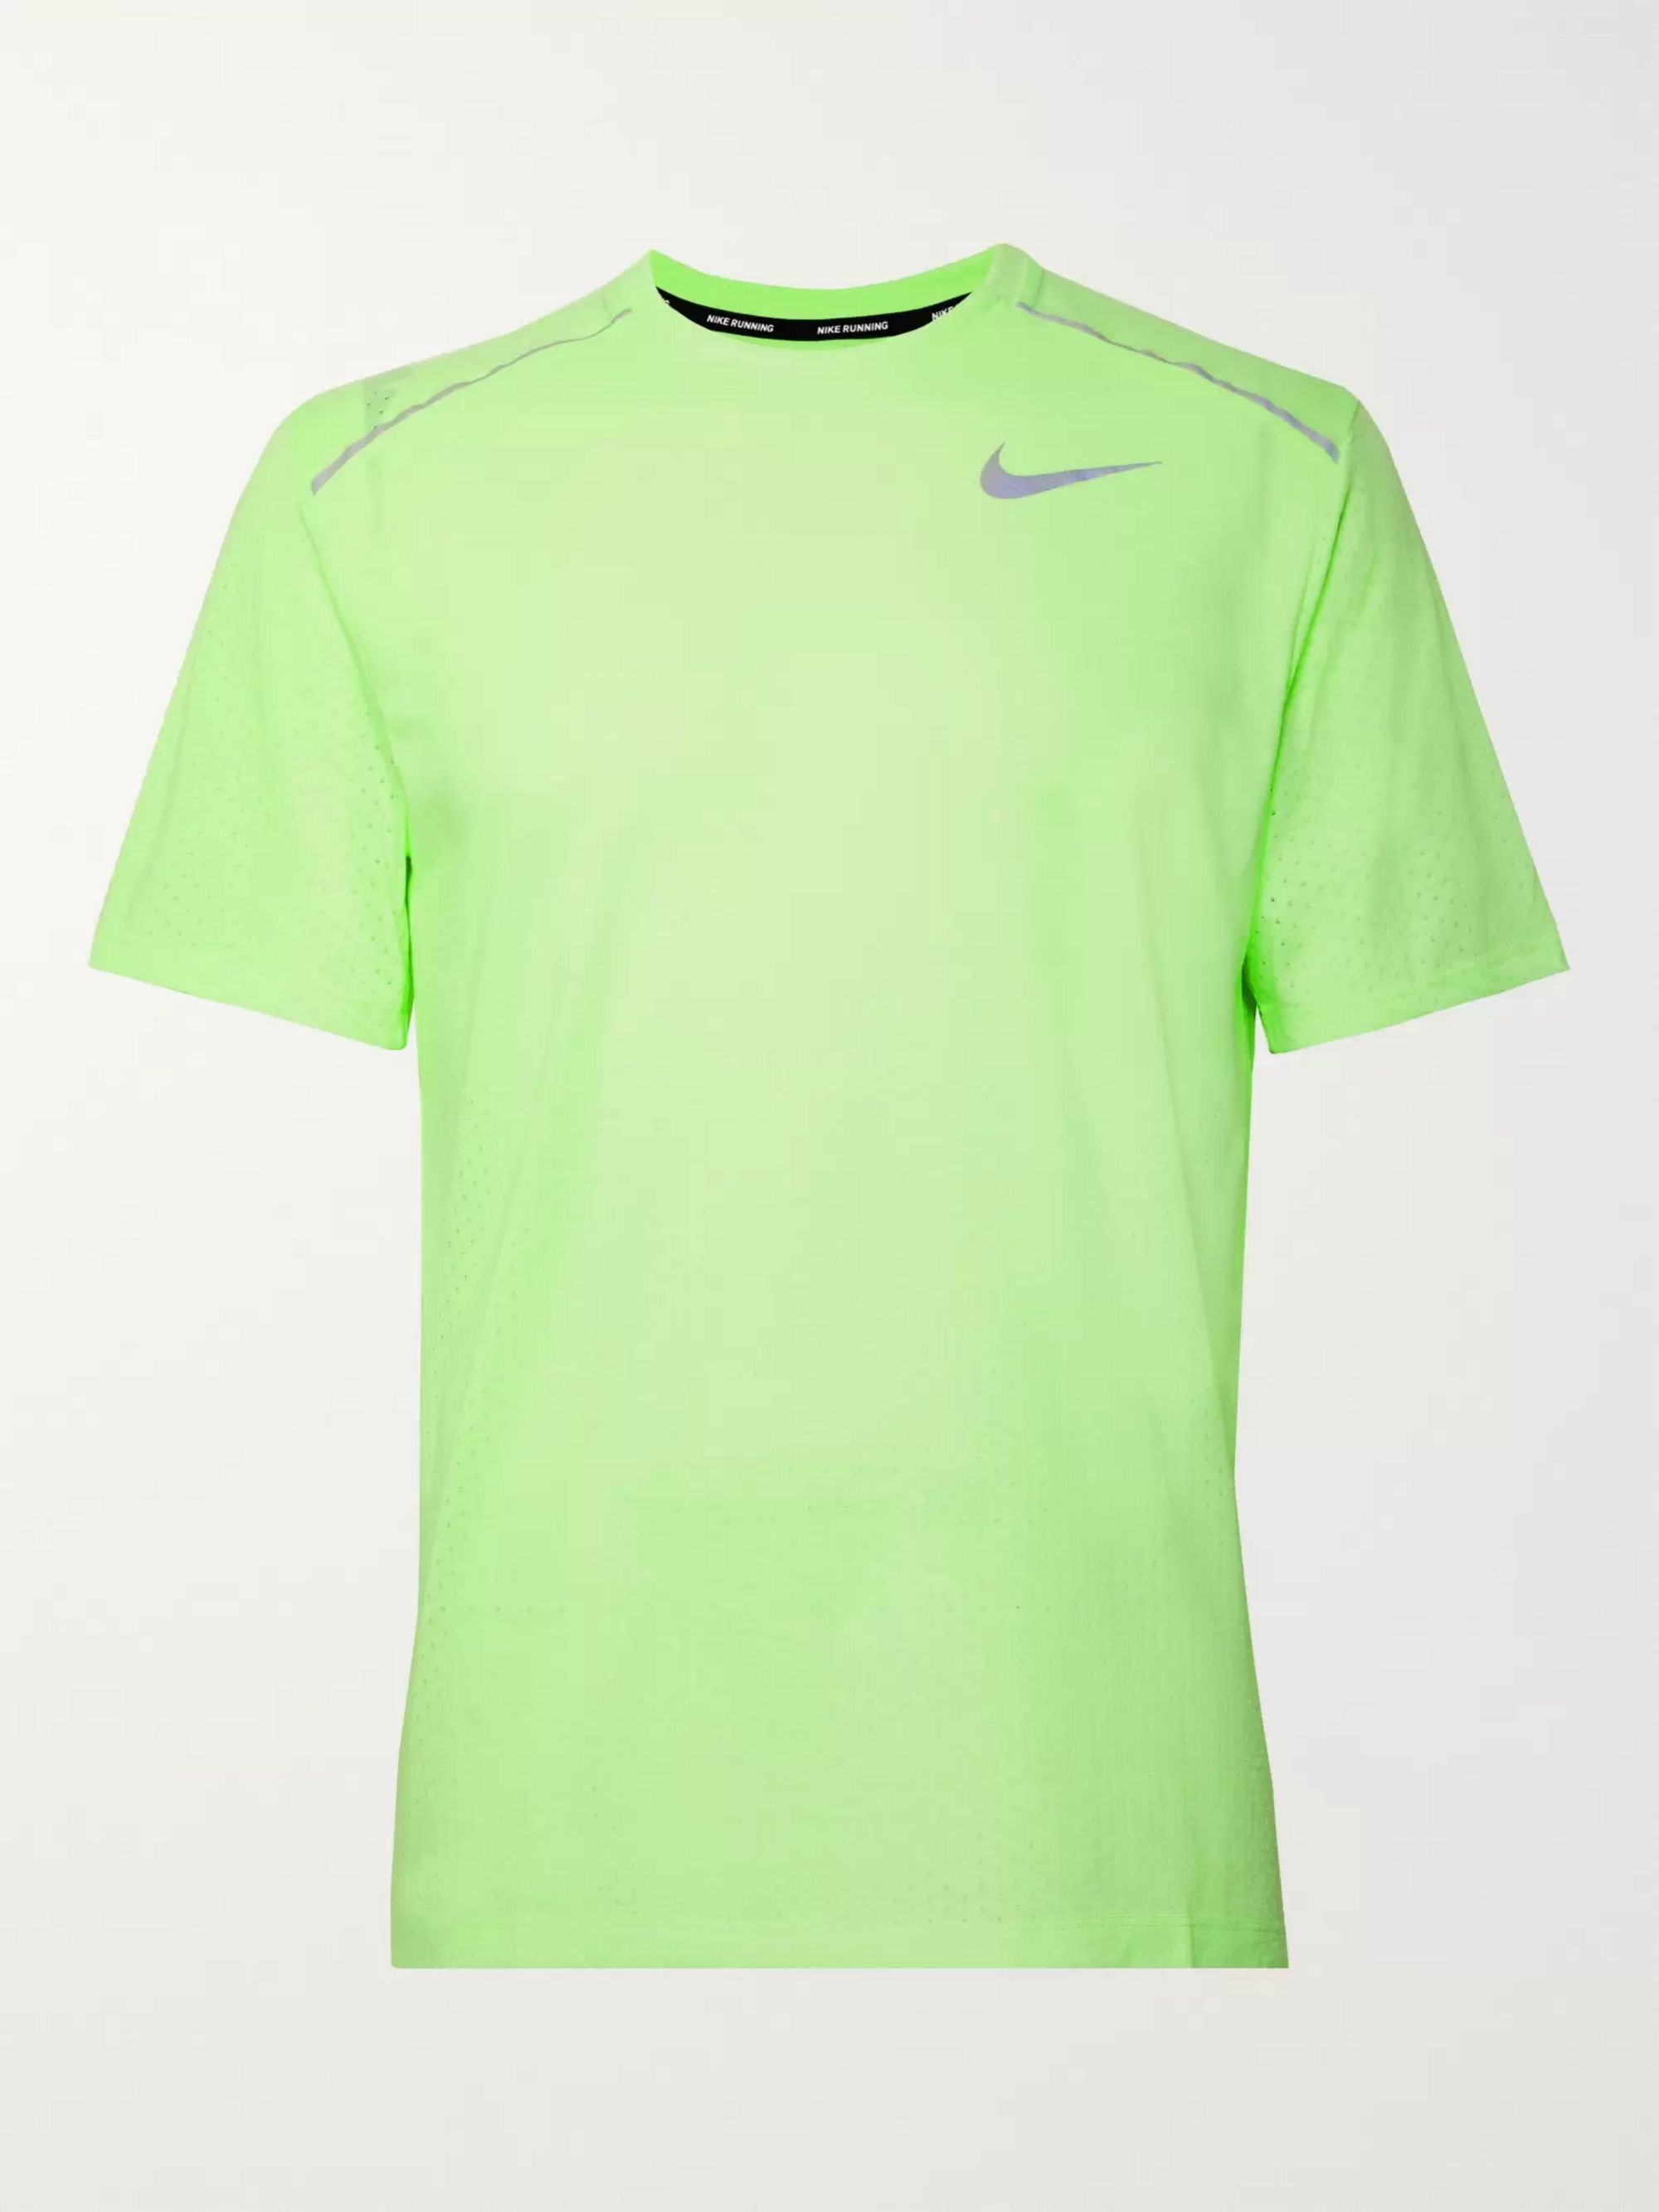 womens neon green nike shirt